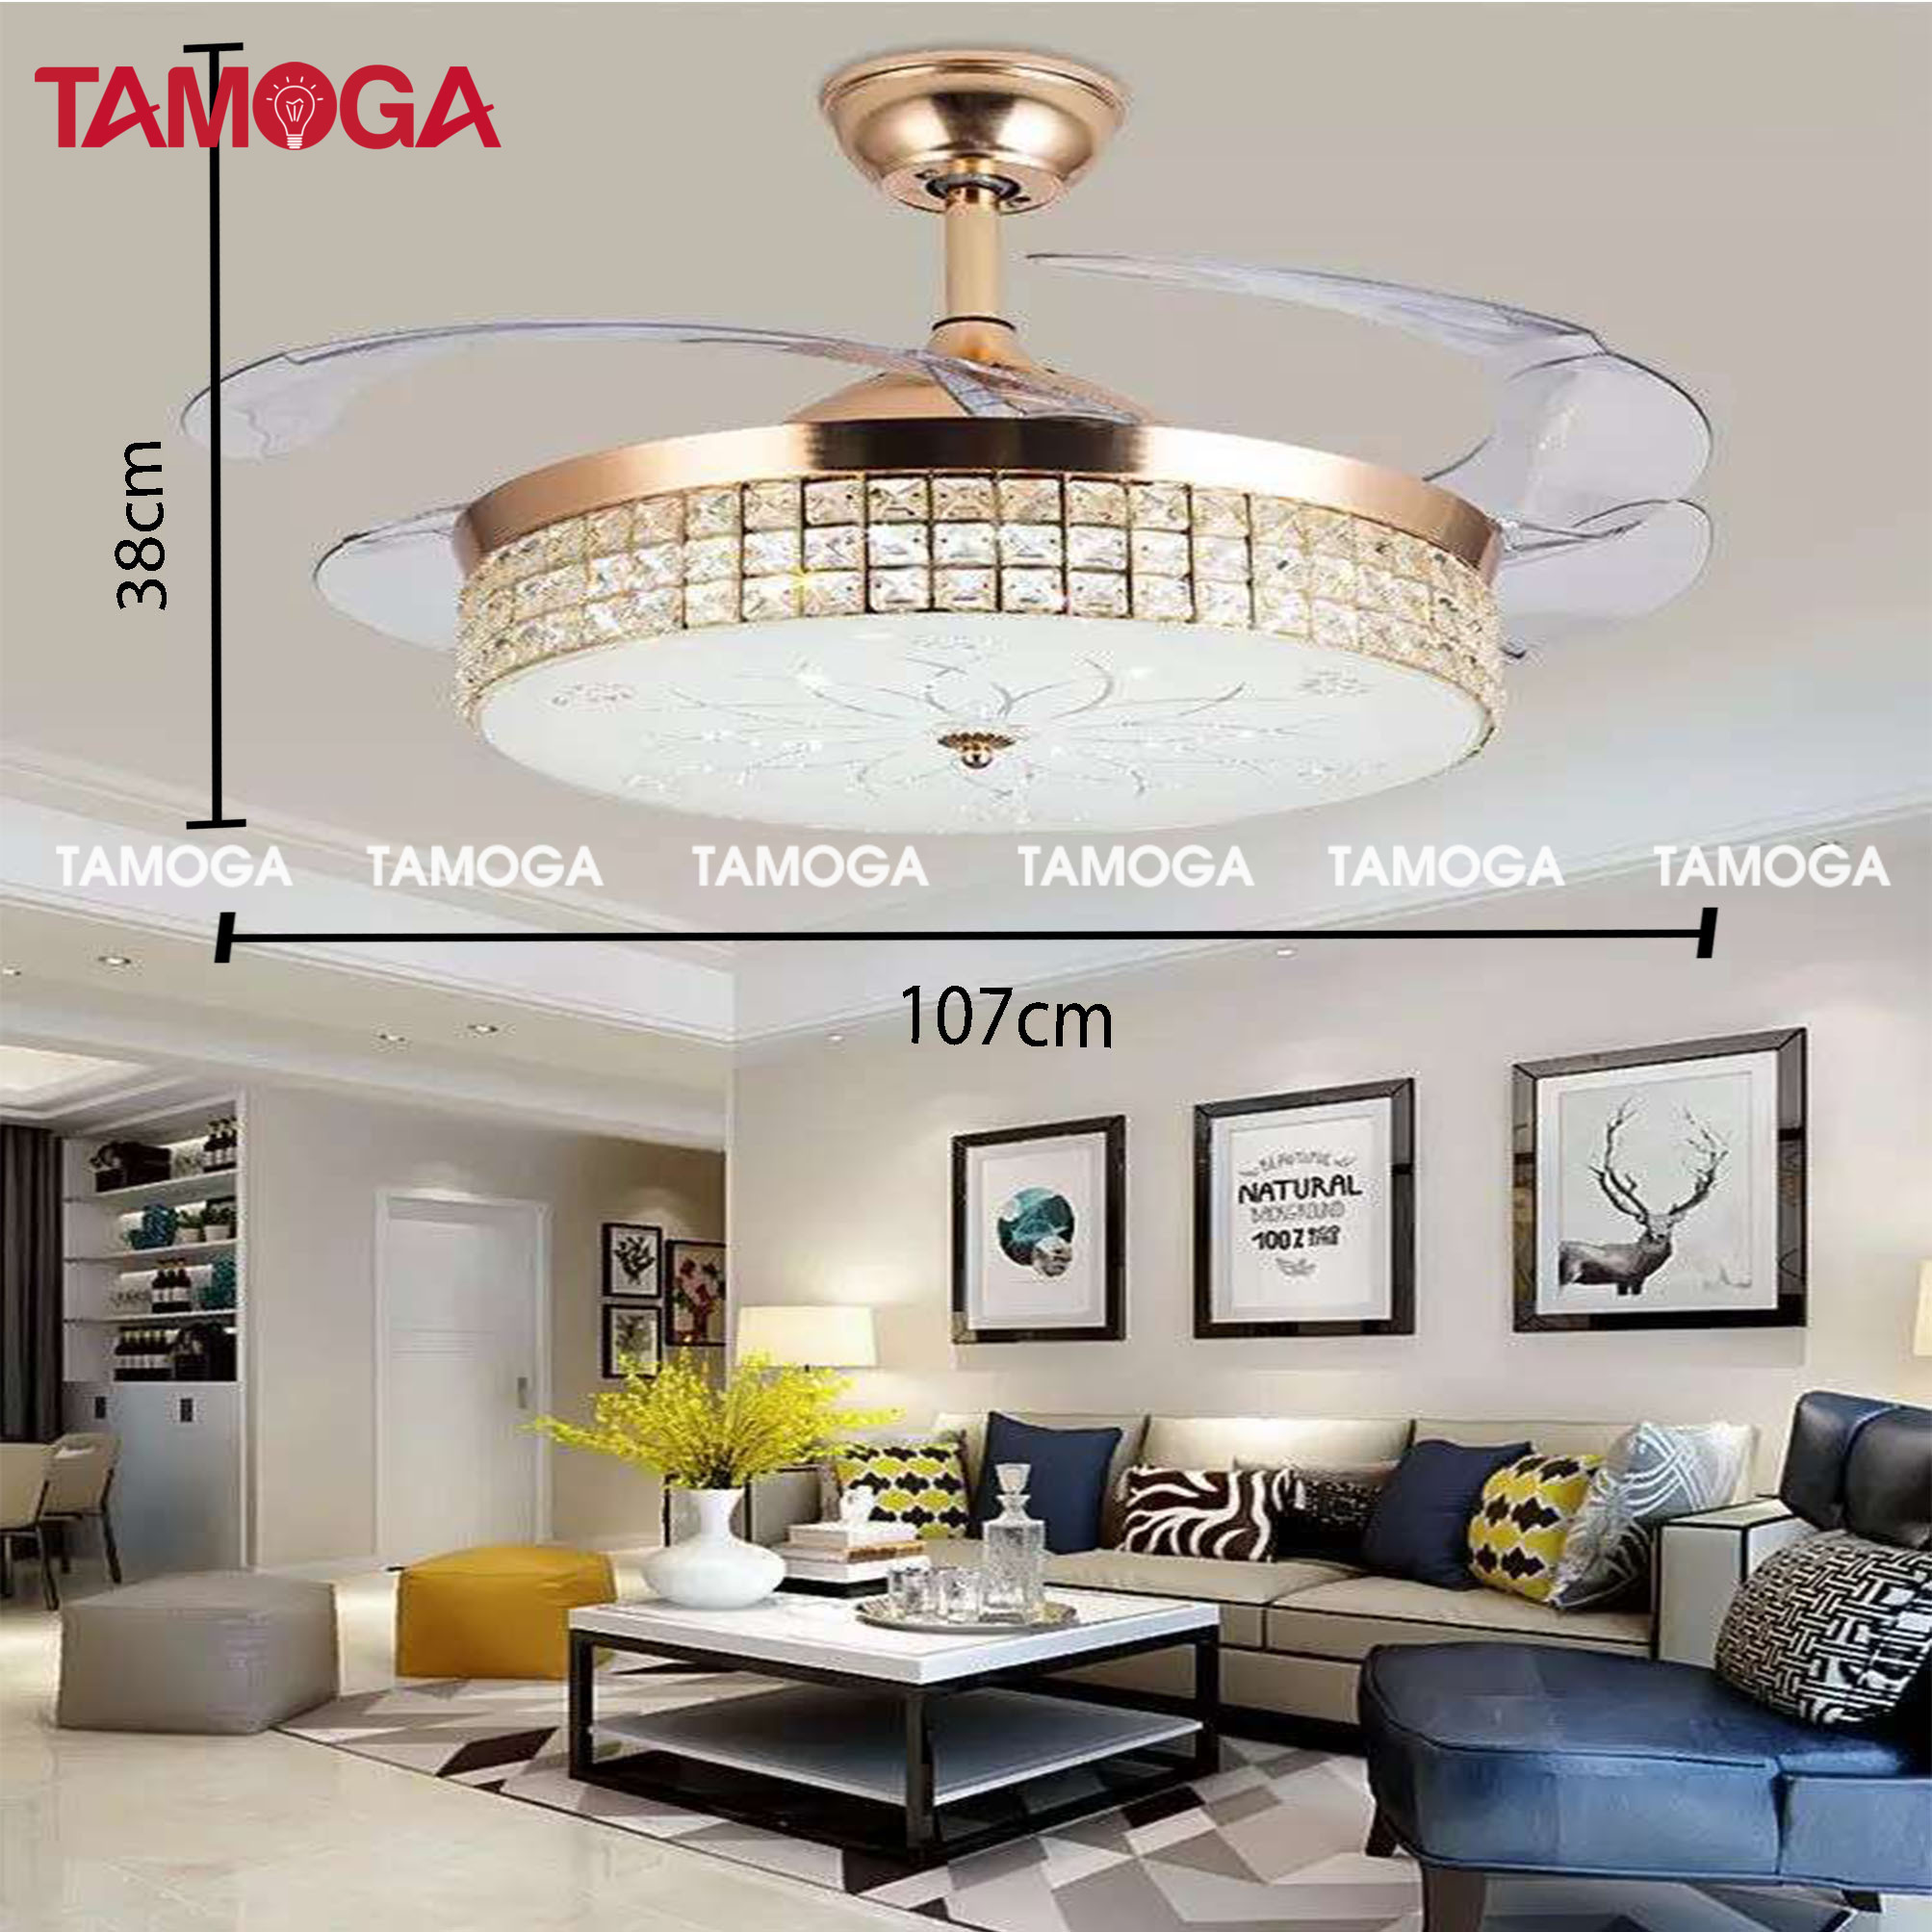 Quạt trần đèn phòng khách G30 3 chế độ AS TAMOGA CLIXA 8043 + Tặng kèm khiển